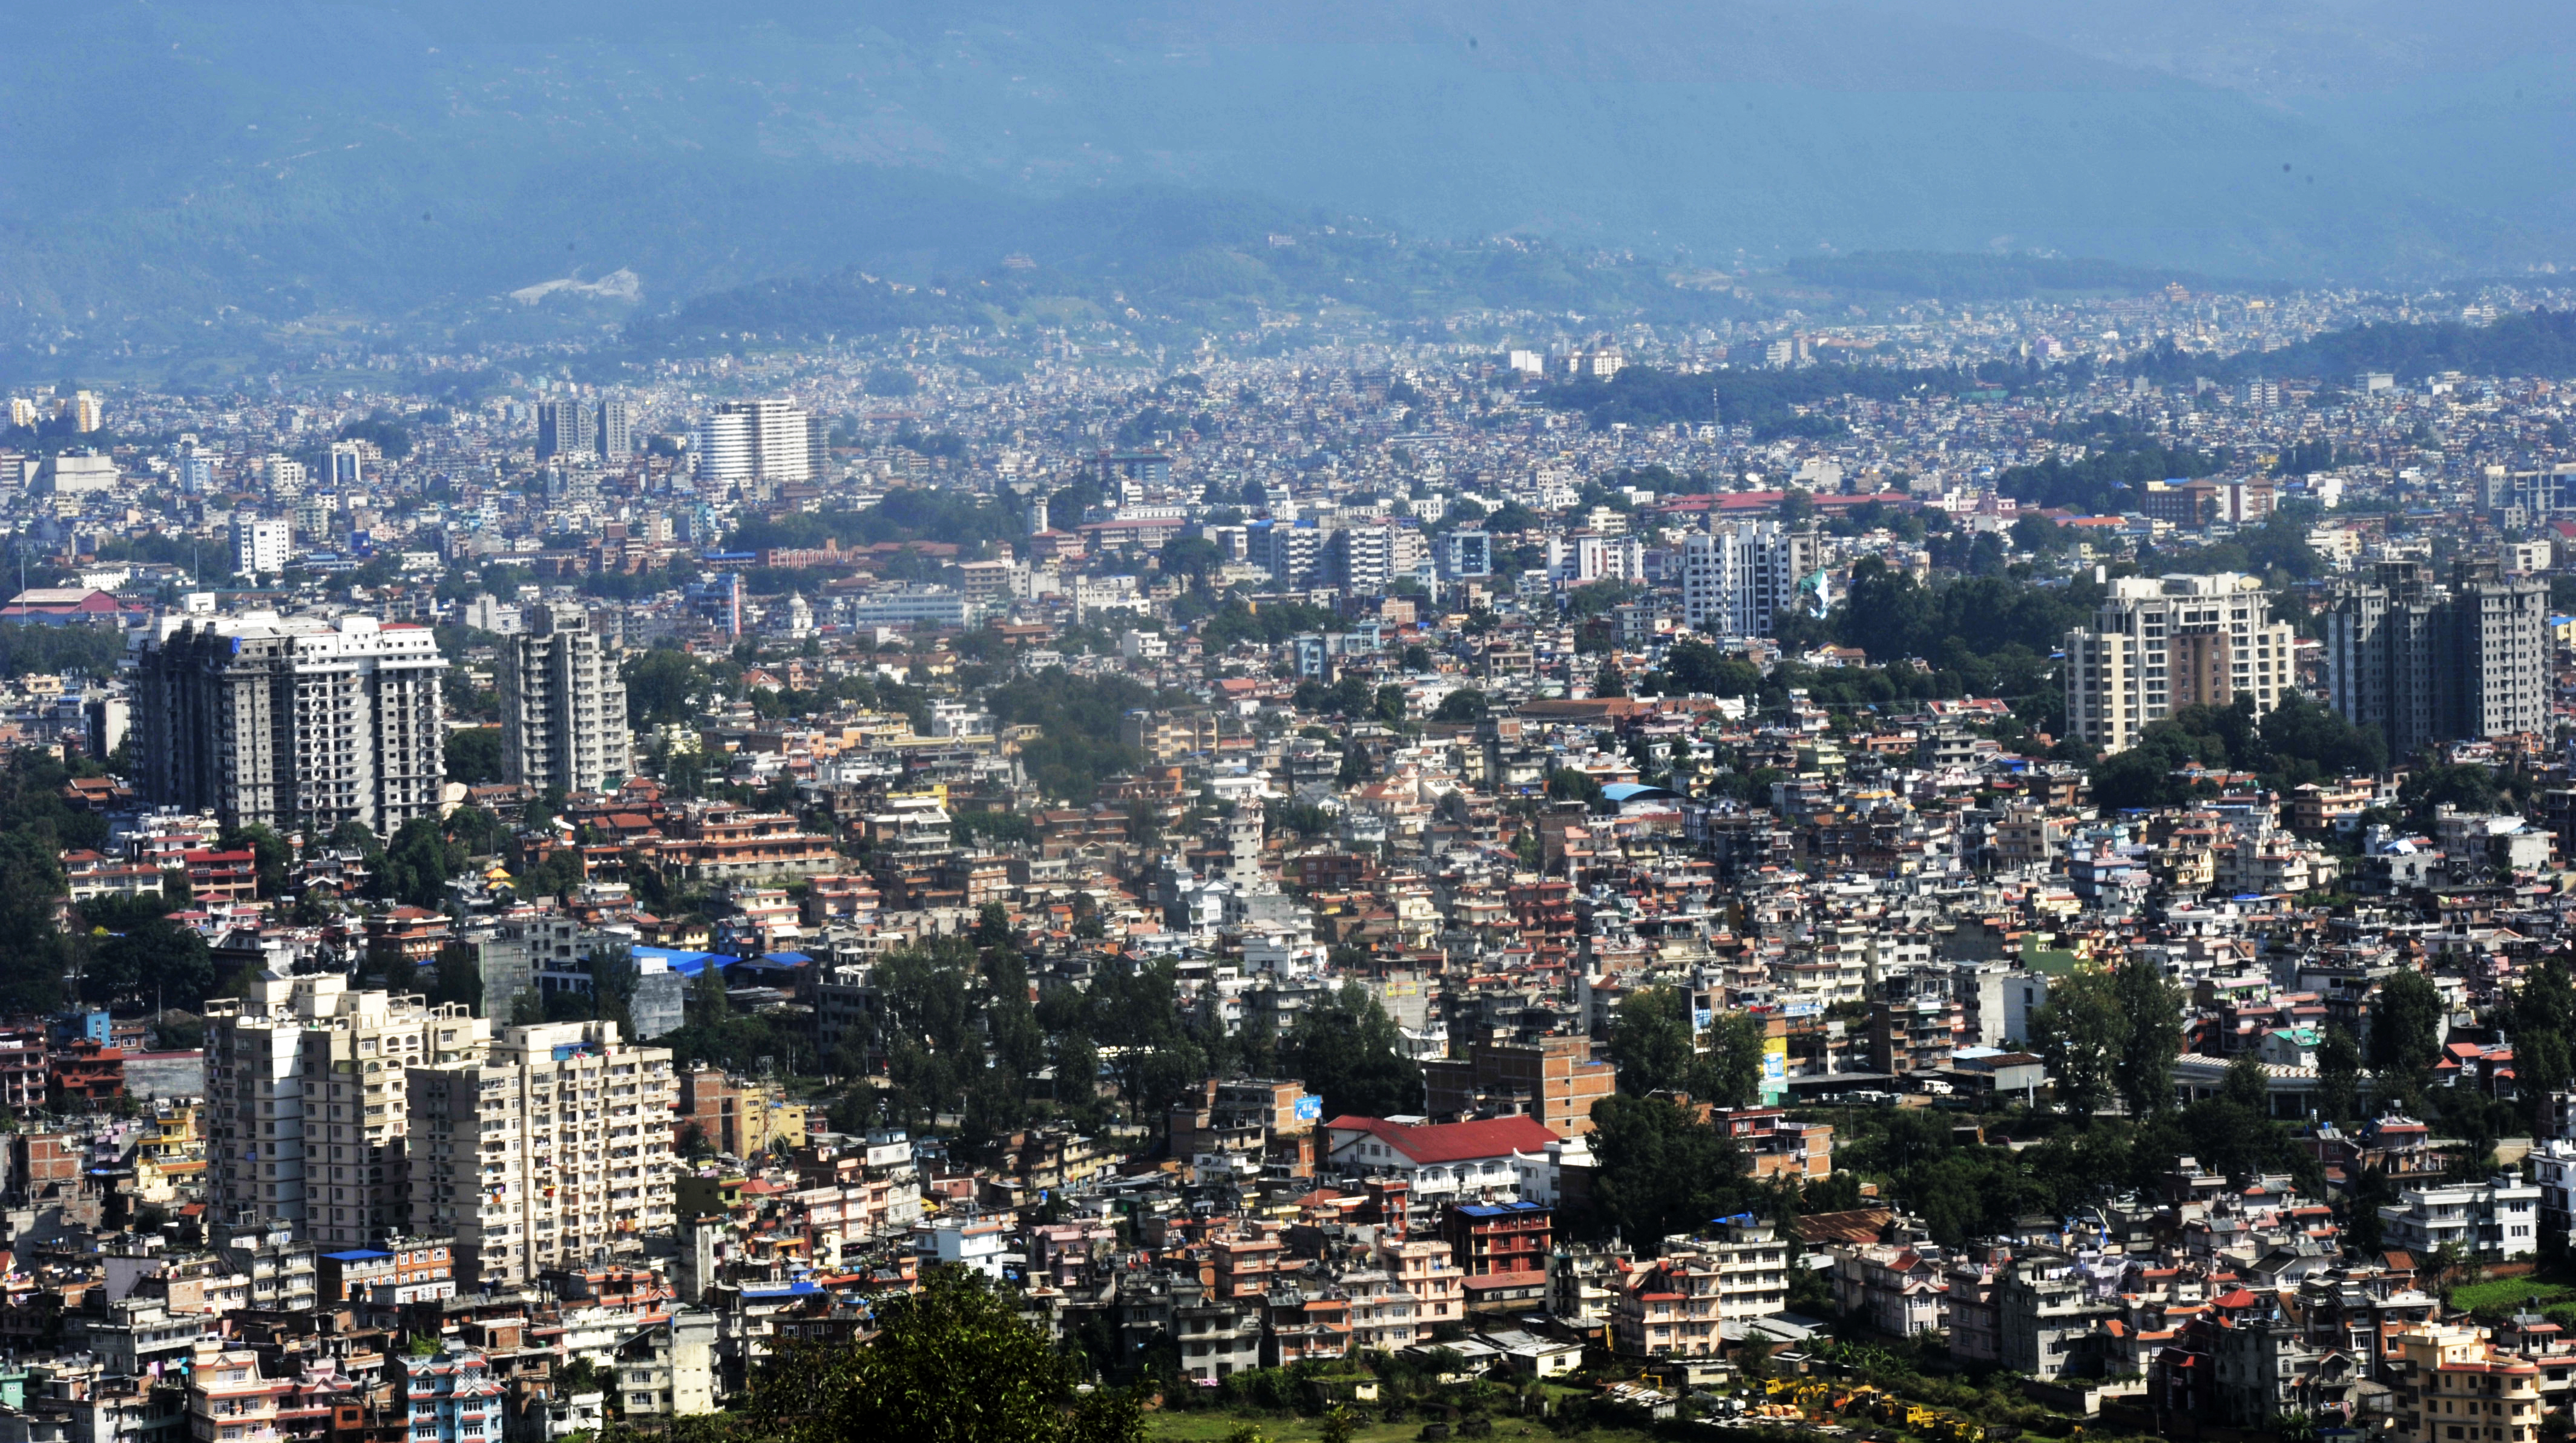 भोलि काठमाडौं उपत्यकाका यी ८ फिडरबाट ५० भन्दा बढी स्थानमा विद्युत सेवा अवरुद्ध हुने (सूचीसहित)